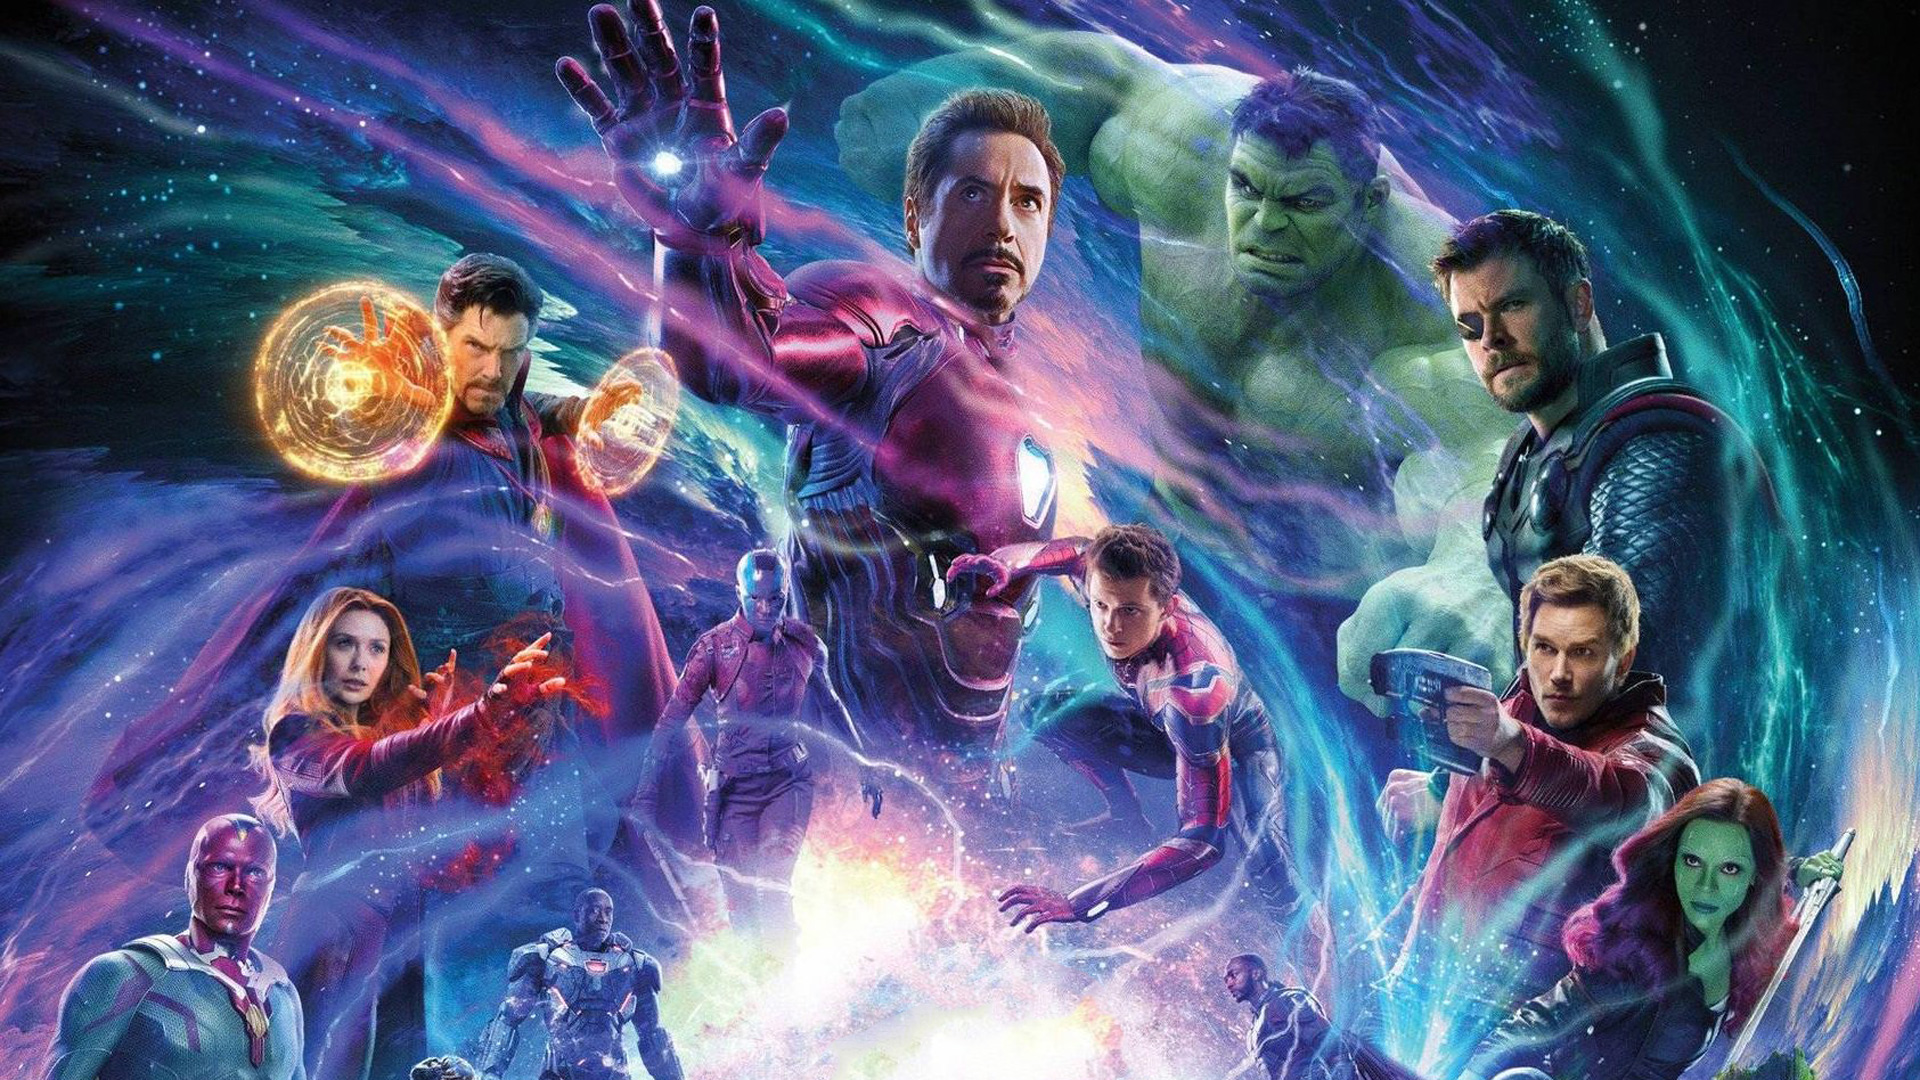 Avengers Infinity War Movie Bill Poster, HD Movies, 4k ... - 1920 x 1080 jpeg 930kB